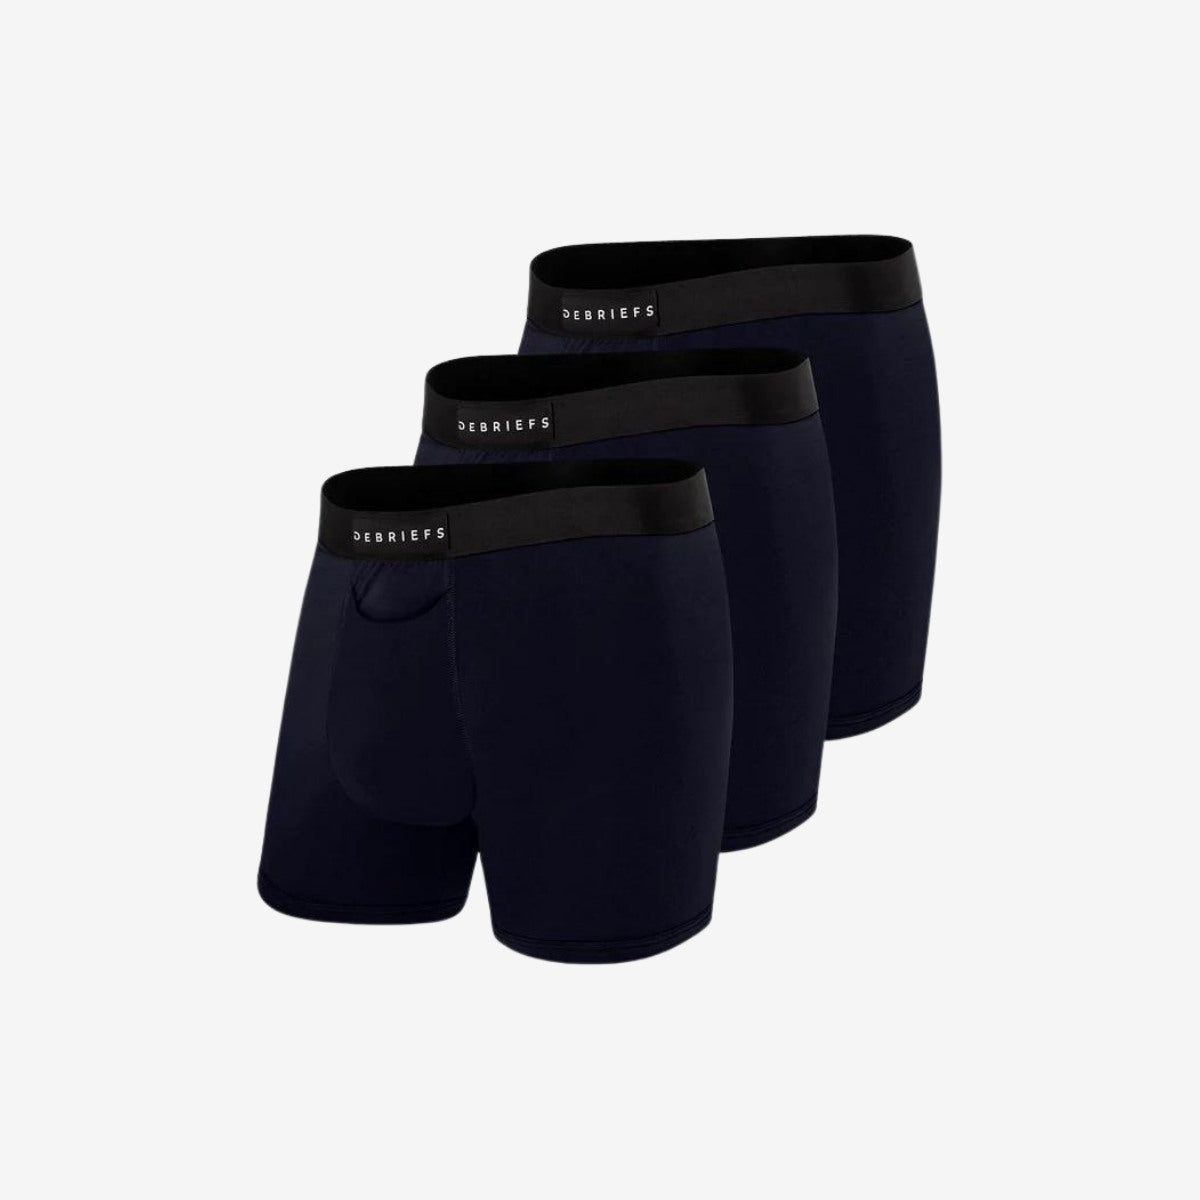 Mens Boxer Briefs Underwear Online 3 pack - Navy